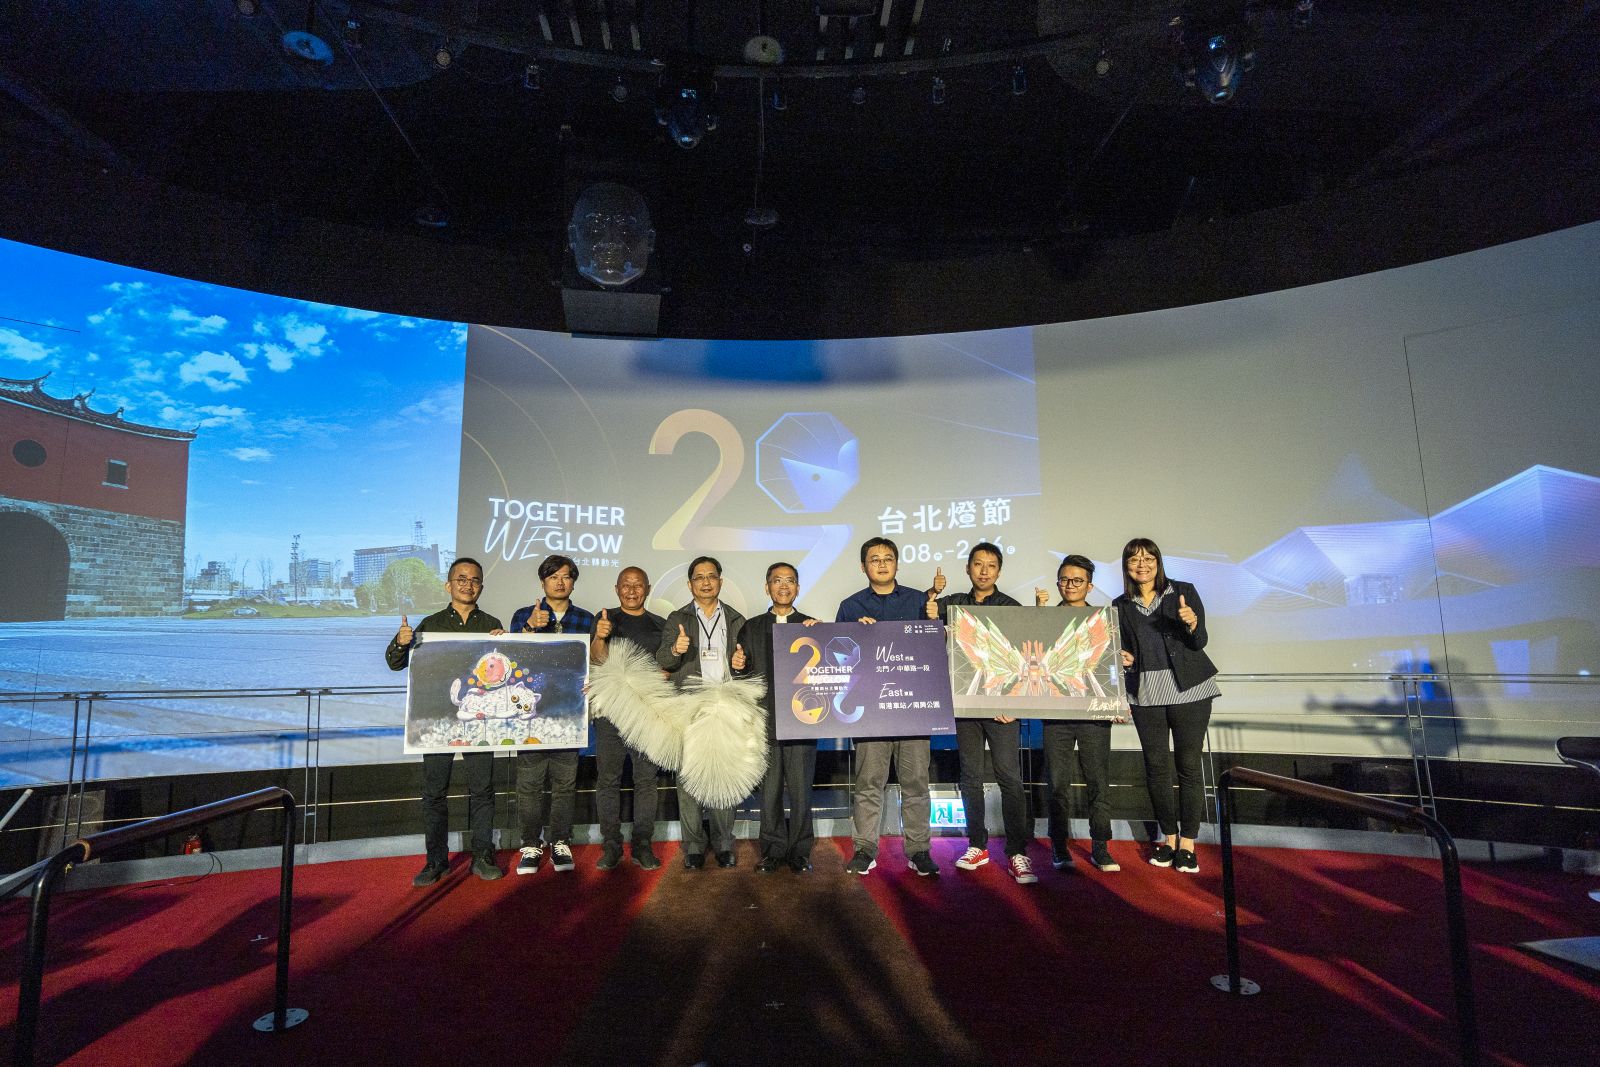 เมื่อวันที่ 7 ม.ค.ที่ผ่านมา นายไช่ ผิงคุณ (蔡炳坤) รักษาการแทนนายกเทศมนตรีกรุงไทเปเปิดตัว งานเทศกาลโคมไฟกรุงไทเปประจำปี 2020 ที่จะมีขึ้นระหว่างวันที่ 8-16 ก.พ.นี้ (ภาพจาก เวปไซด์ Taipei Lantern Festival)